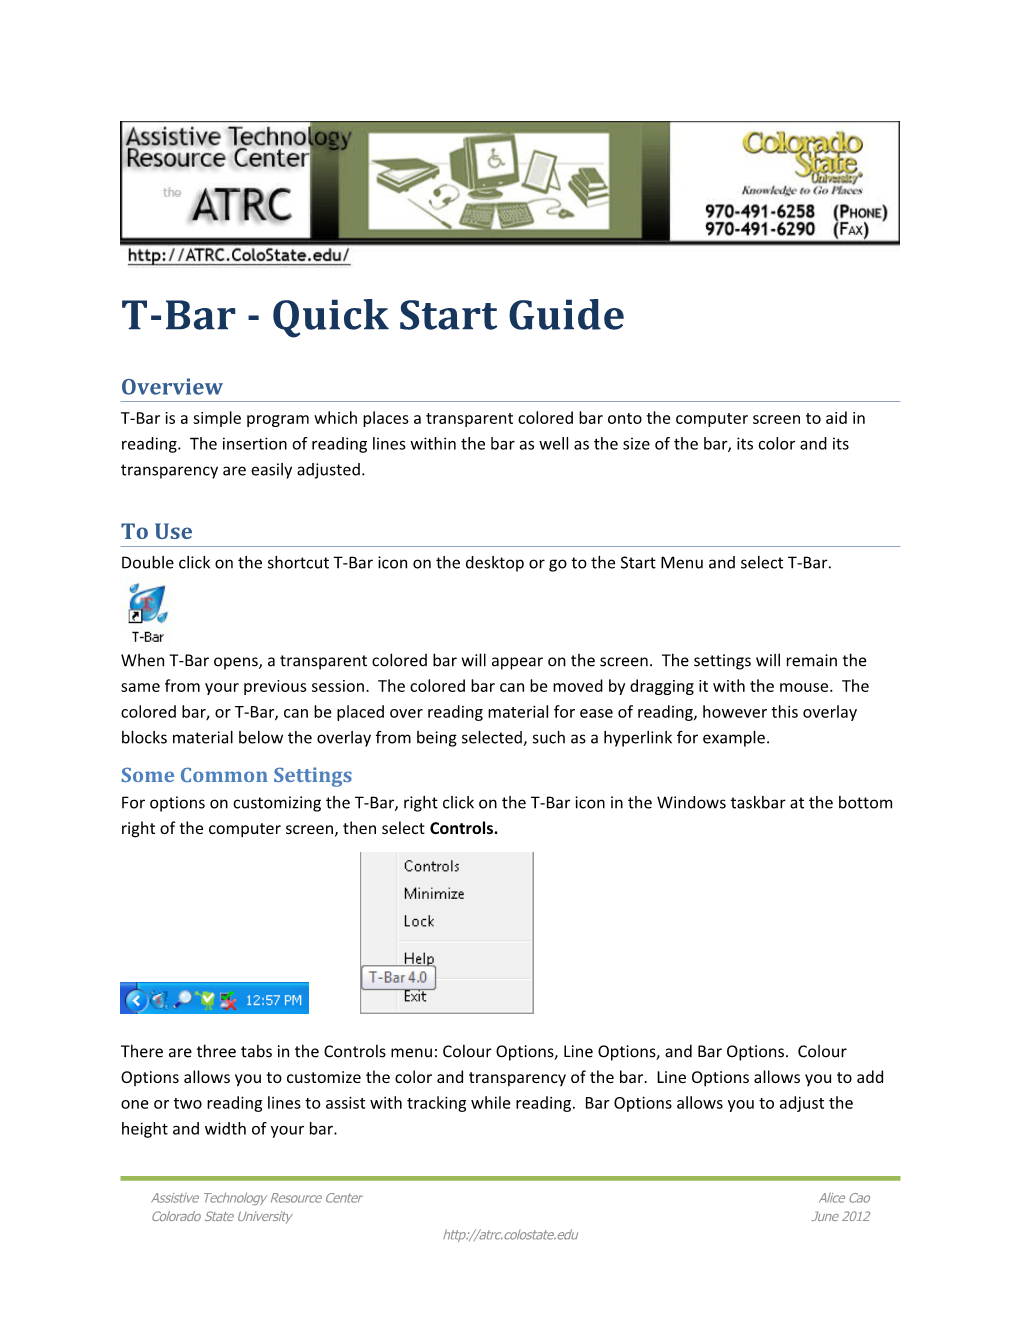 T-Bar - Quick Start Guide